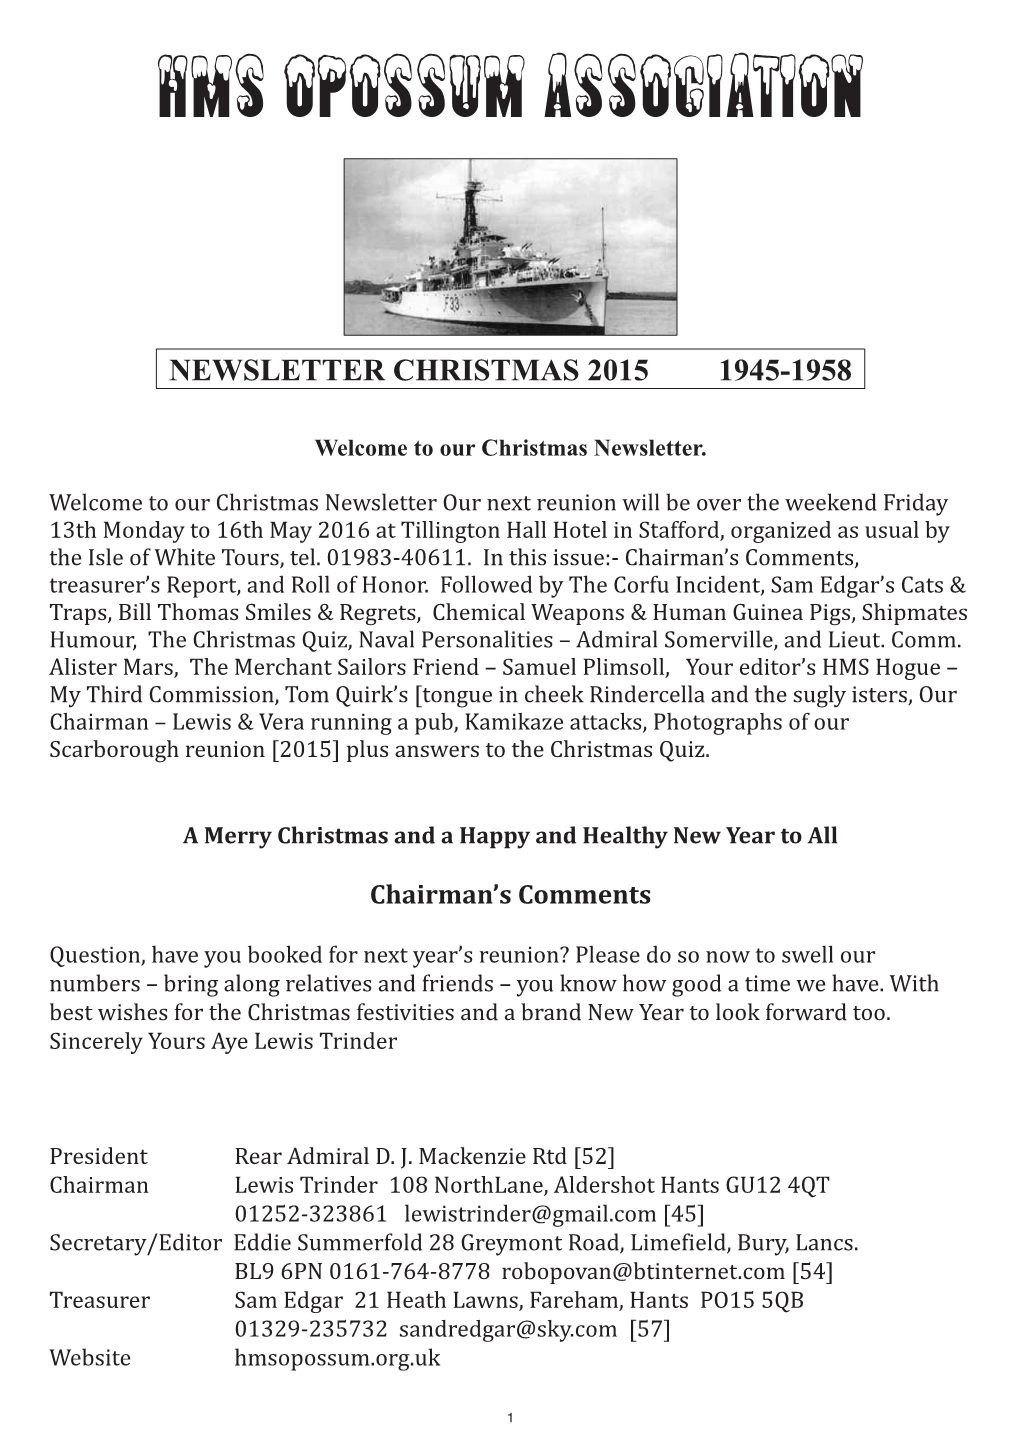 2015 Christmas Newsletter